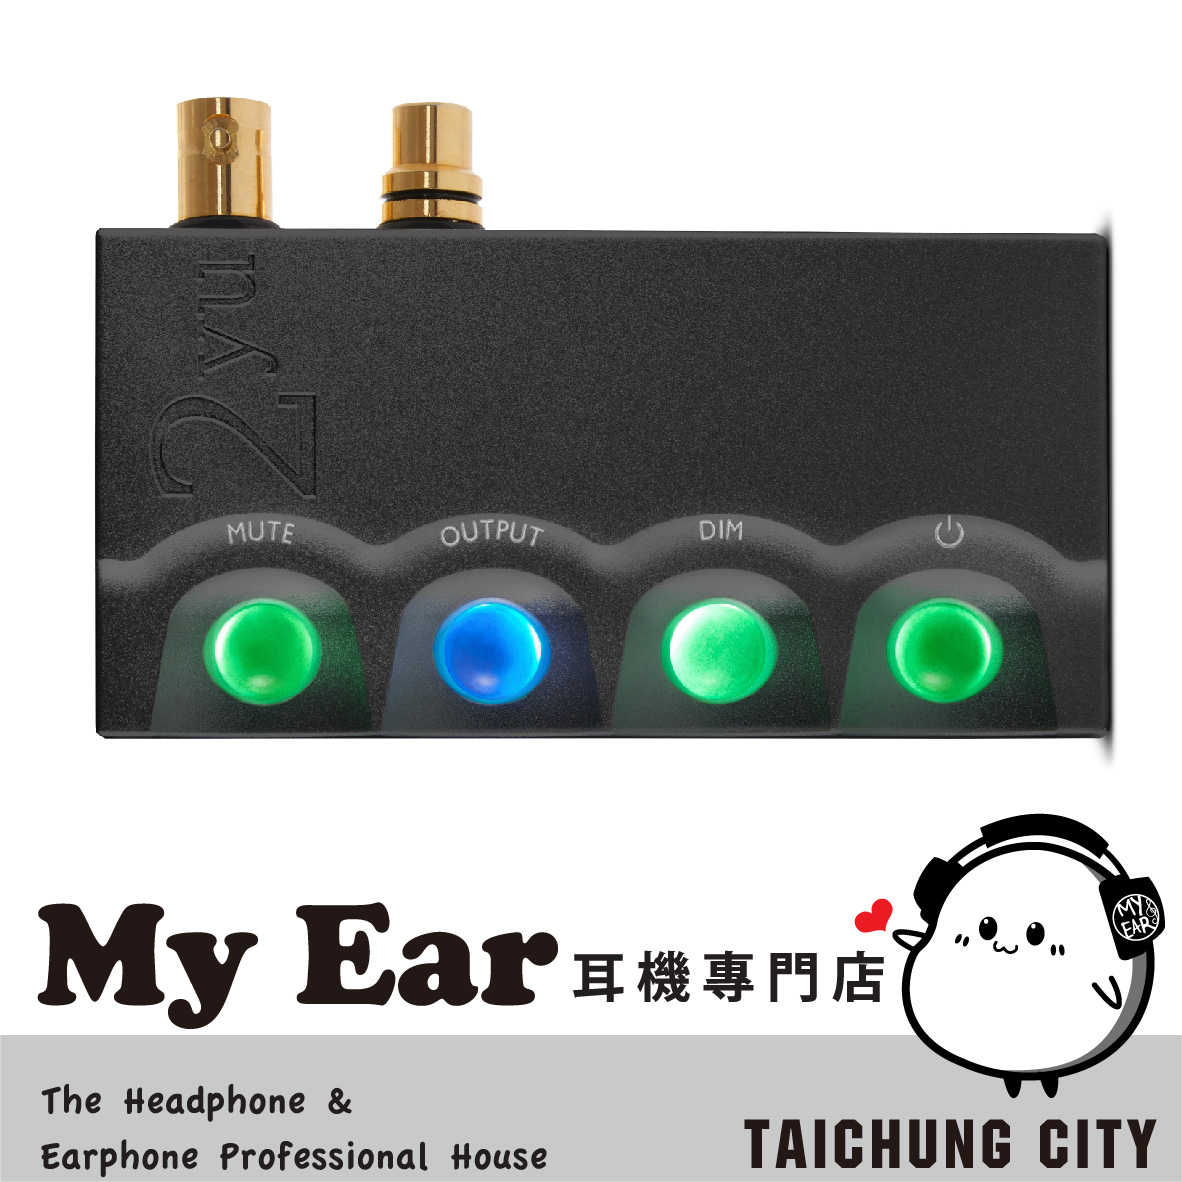 Chord 2YU 黑 適用 2GO USB供電 鋁合金 擴充模組 | My Ear 耳機專門店